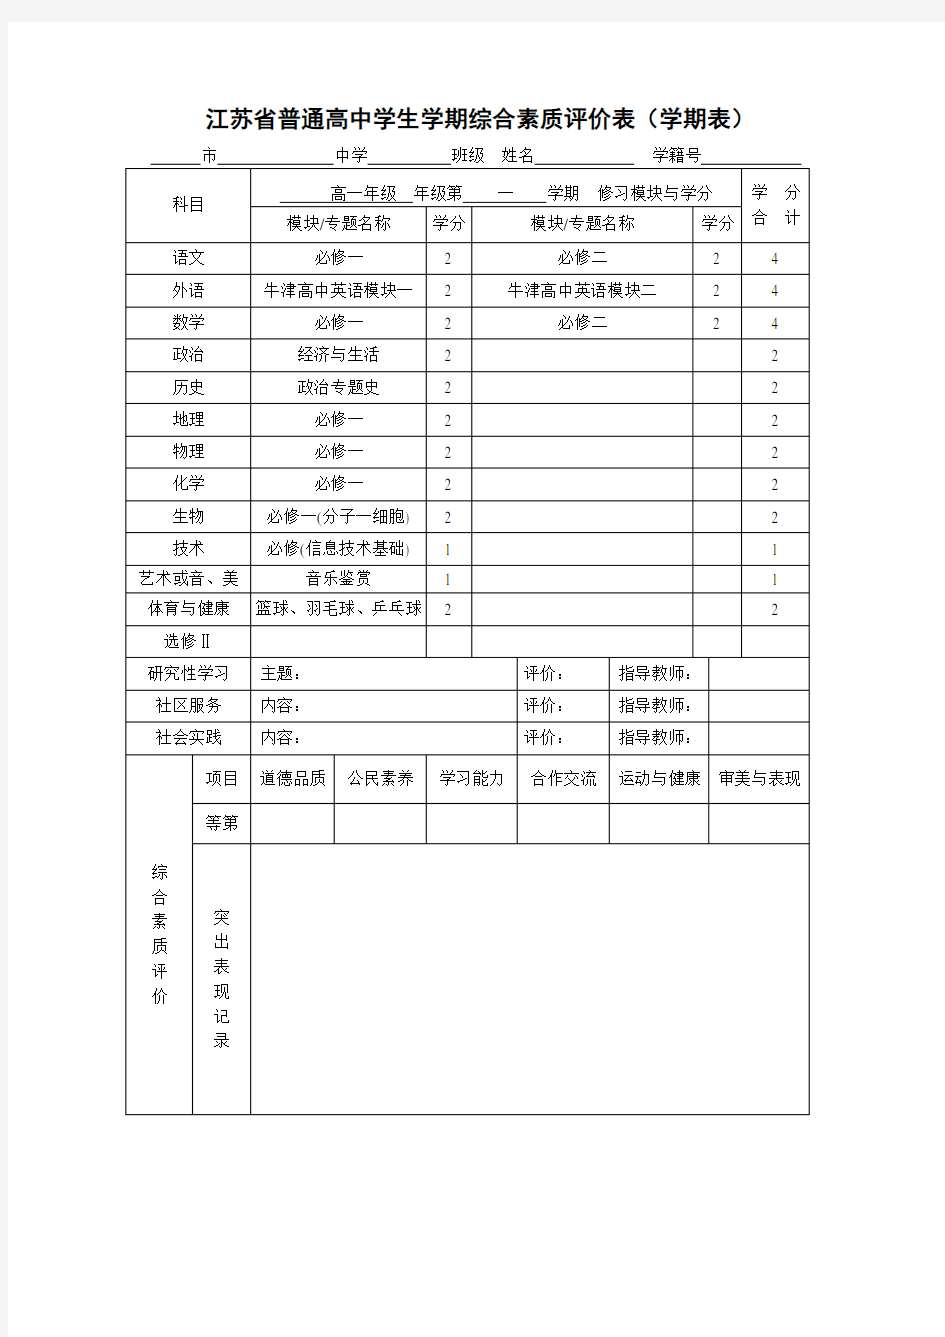 江苏省普通高中学生学期综合素质评价表(学期表)